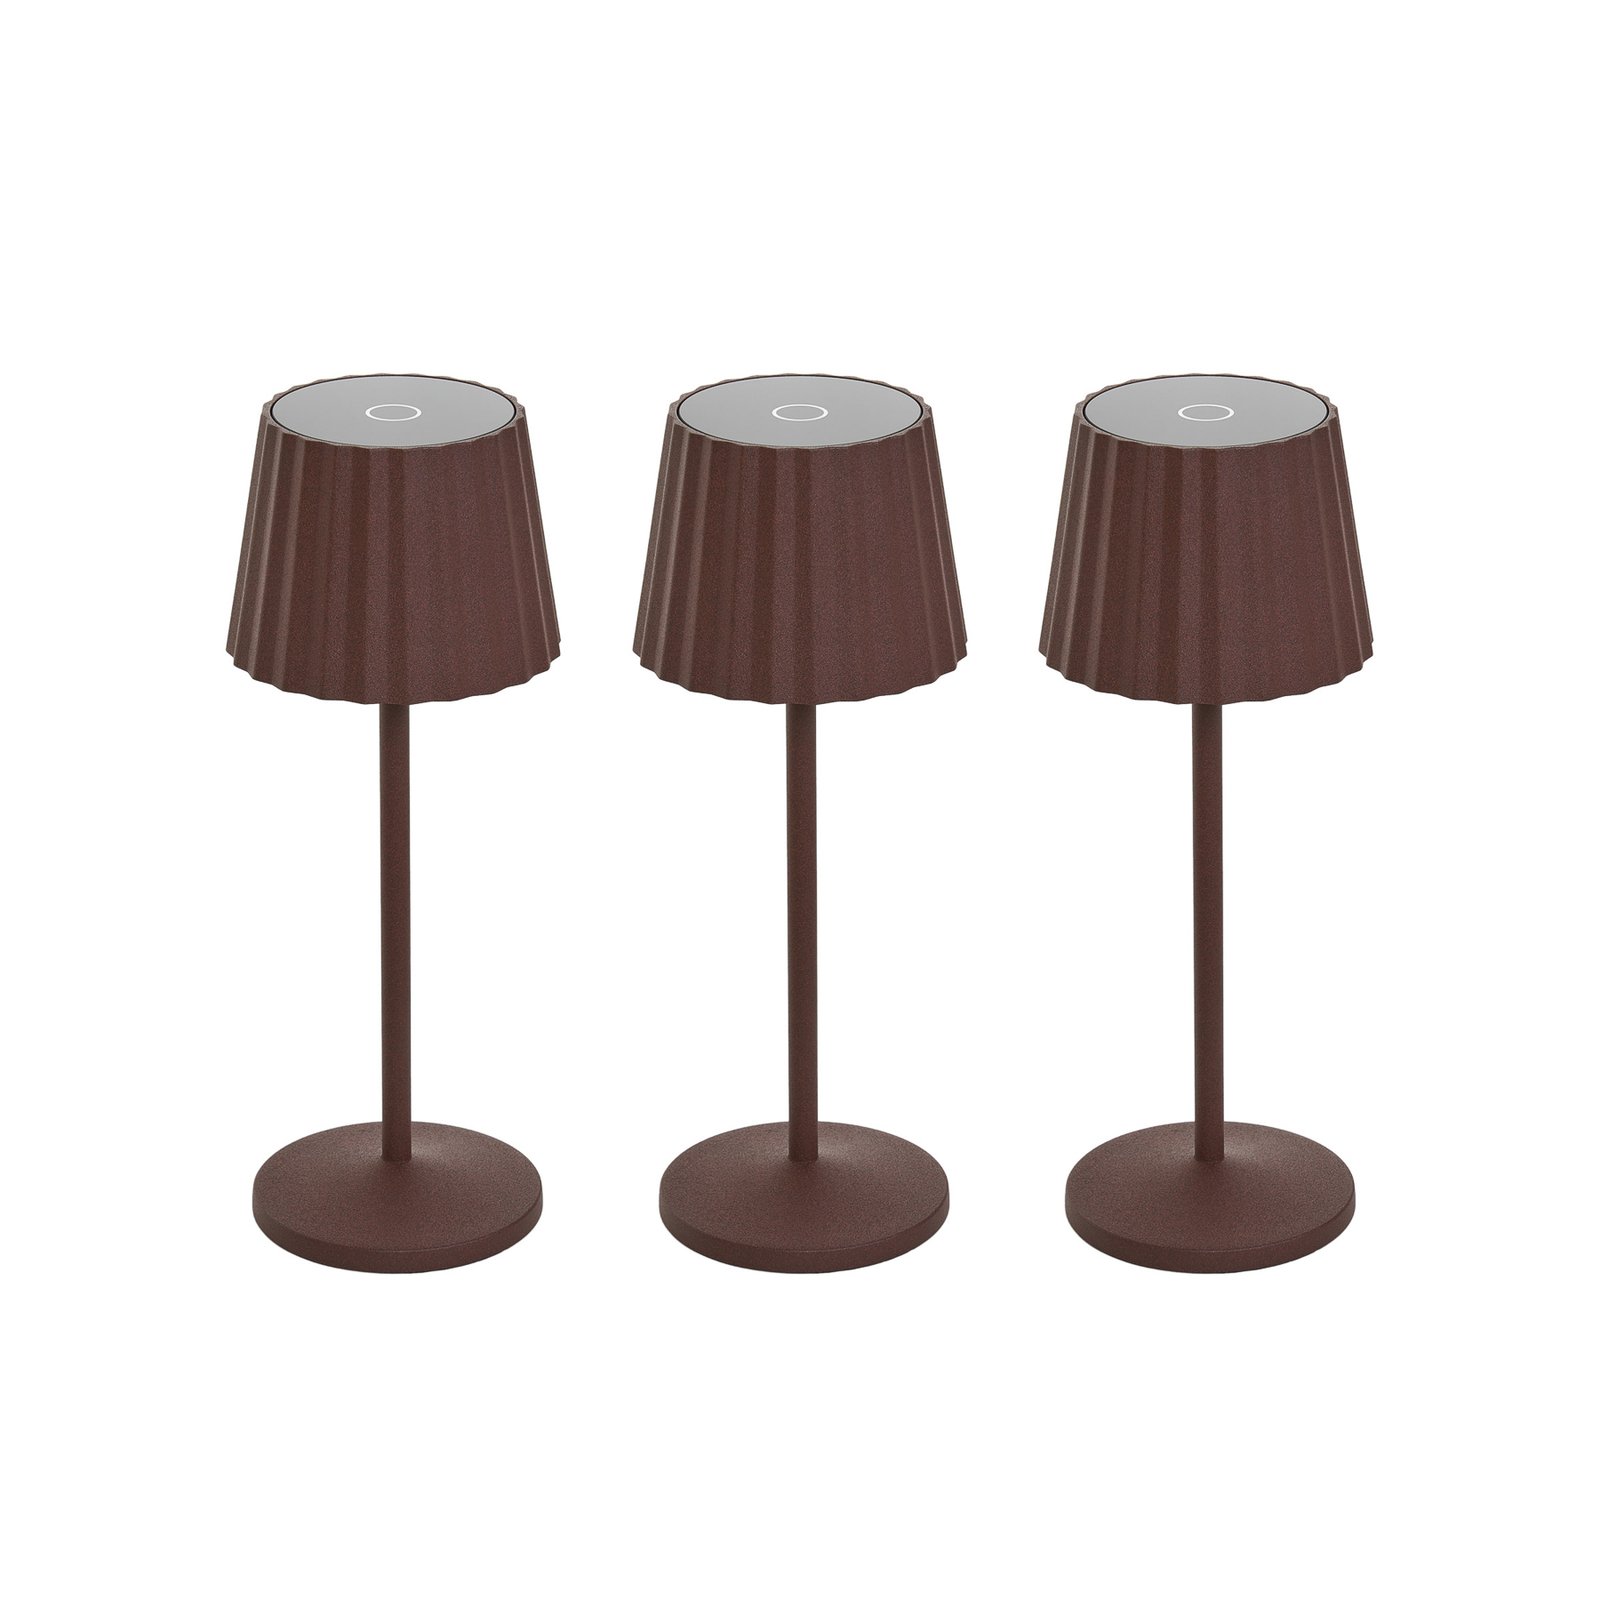 Lindby oppladbar LED-bordlampe Esali, rustbrun, sett med 3 stk